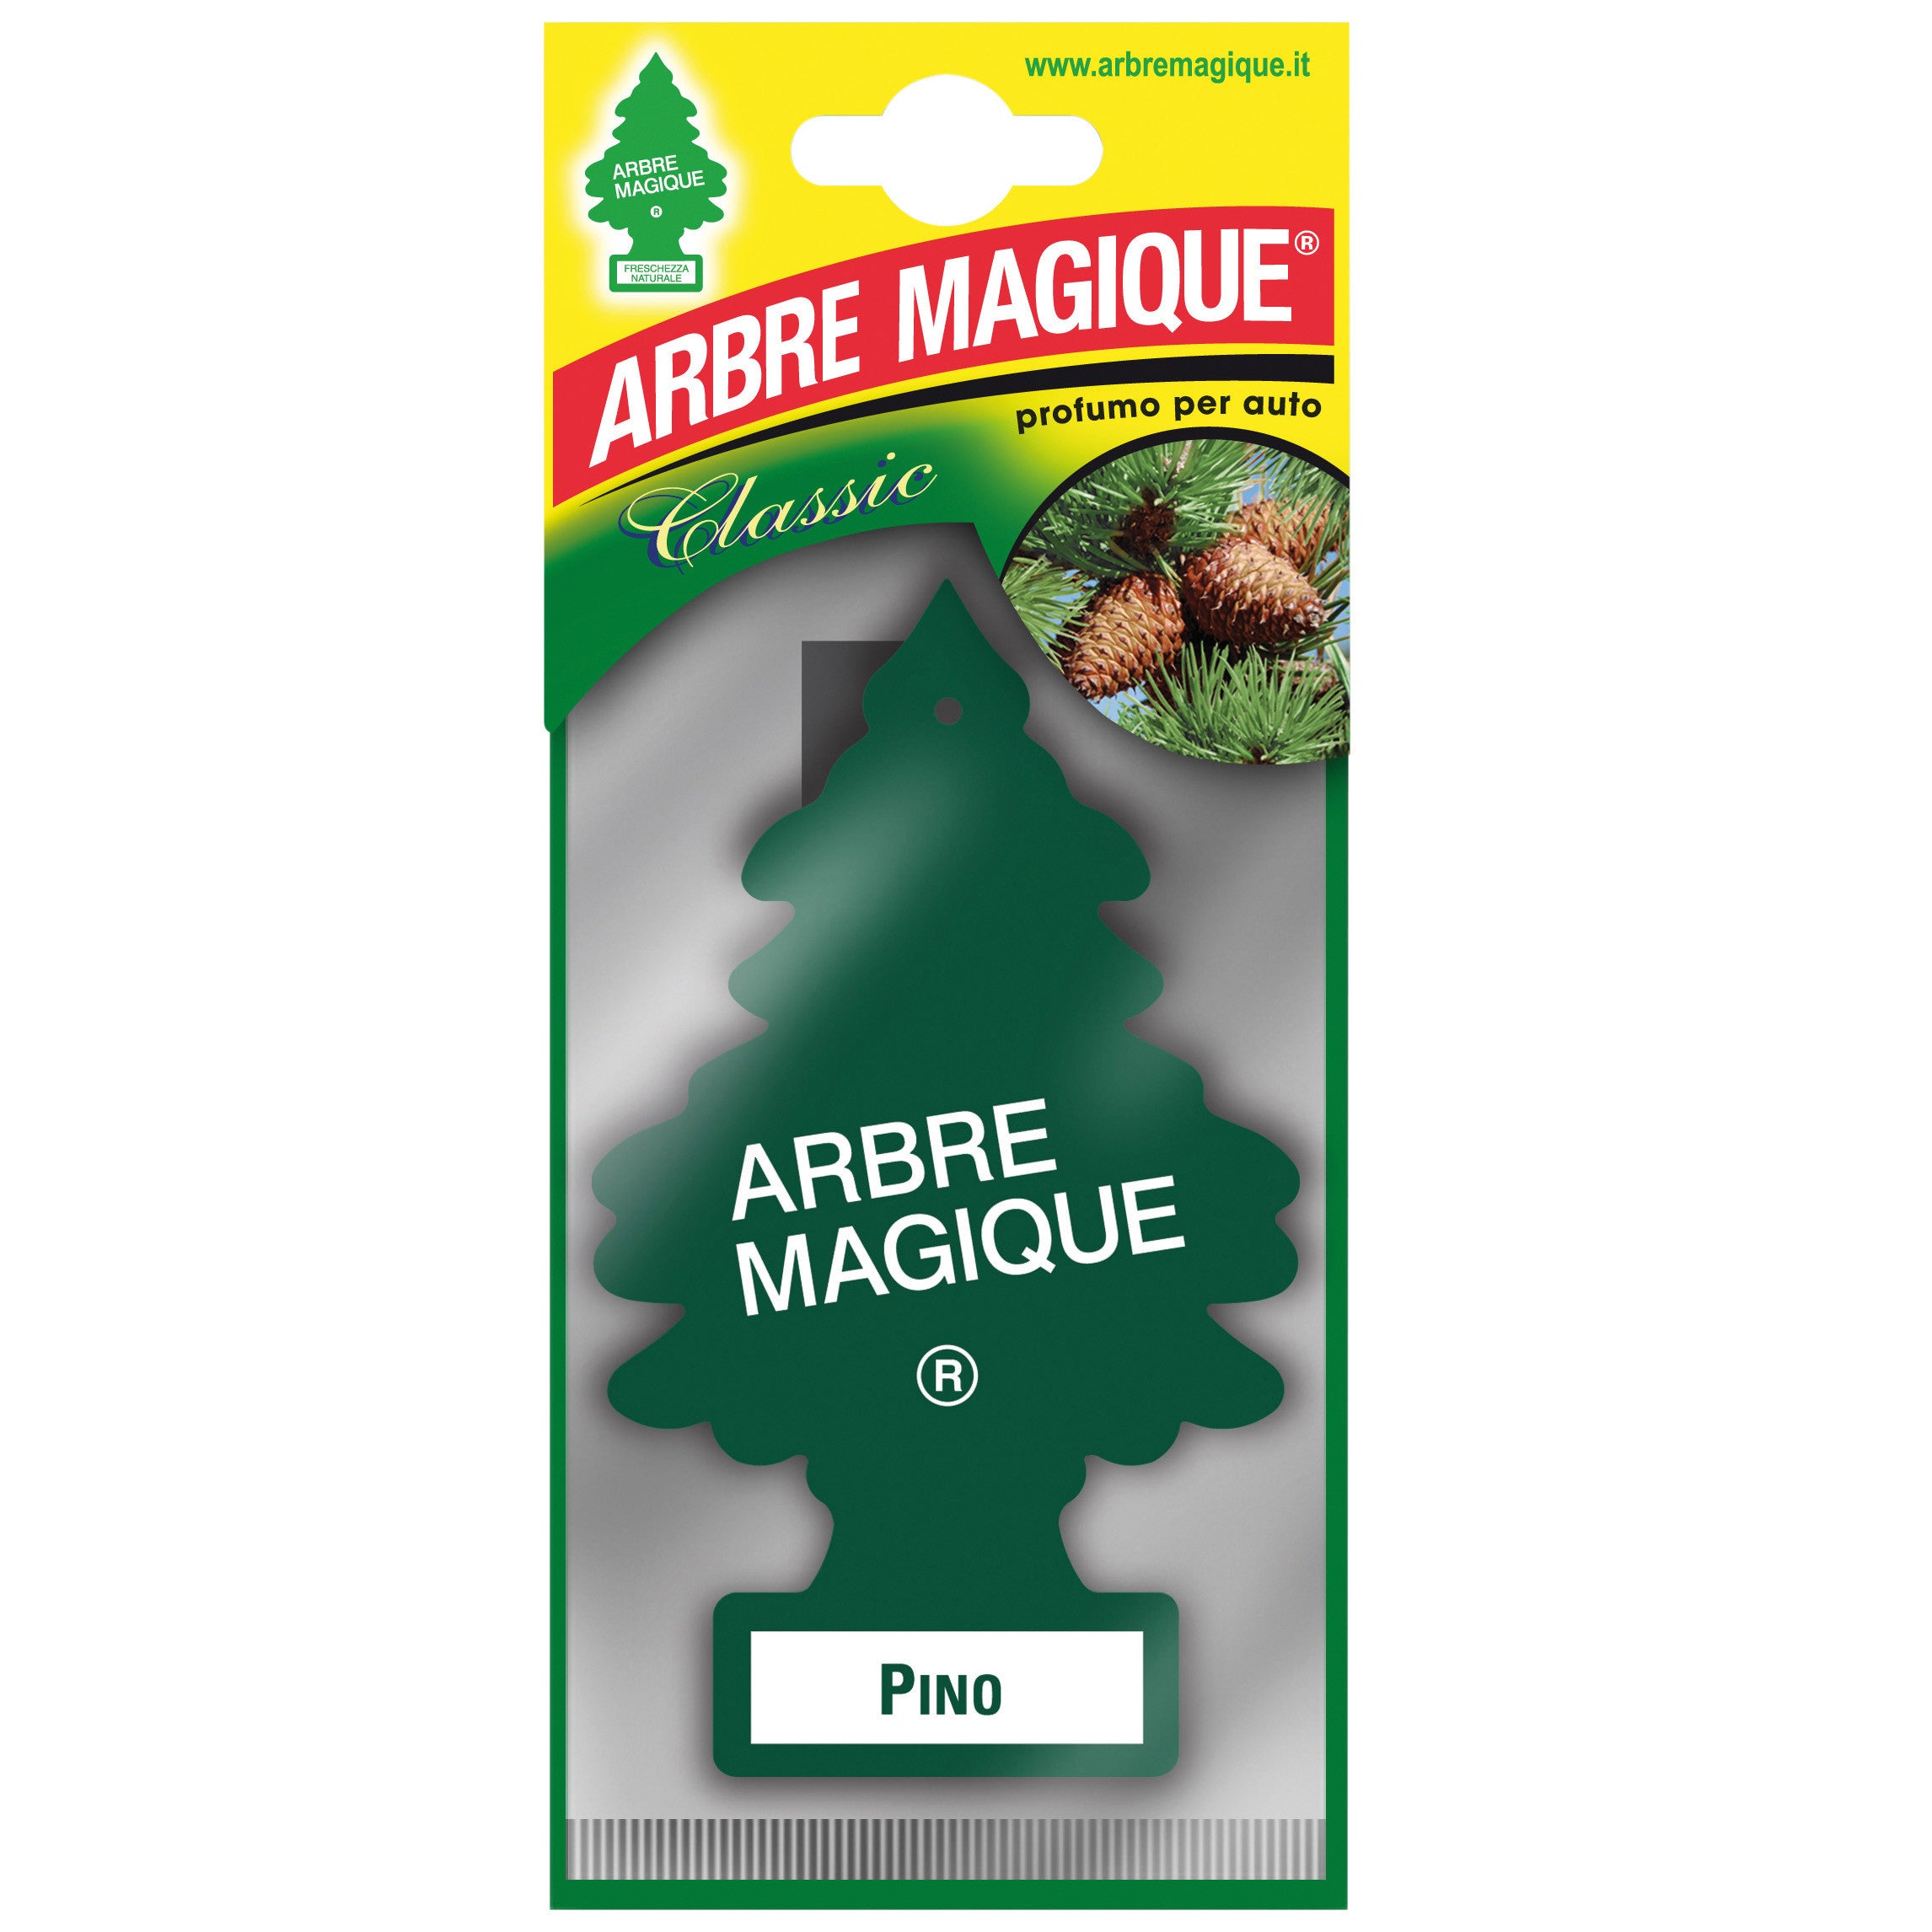 Arbre magique classic pino